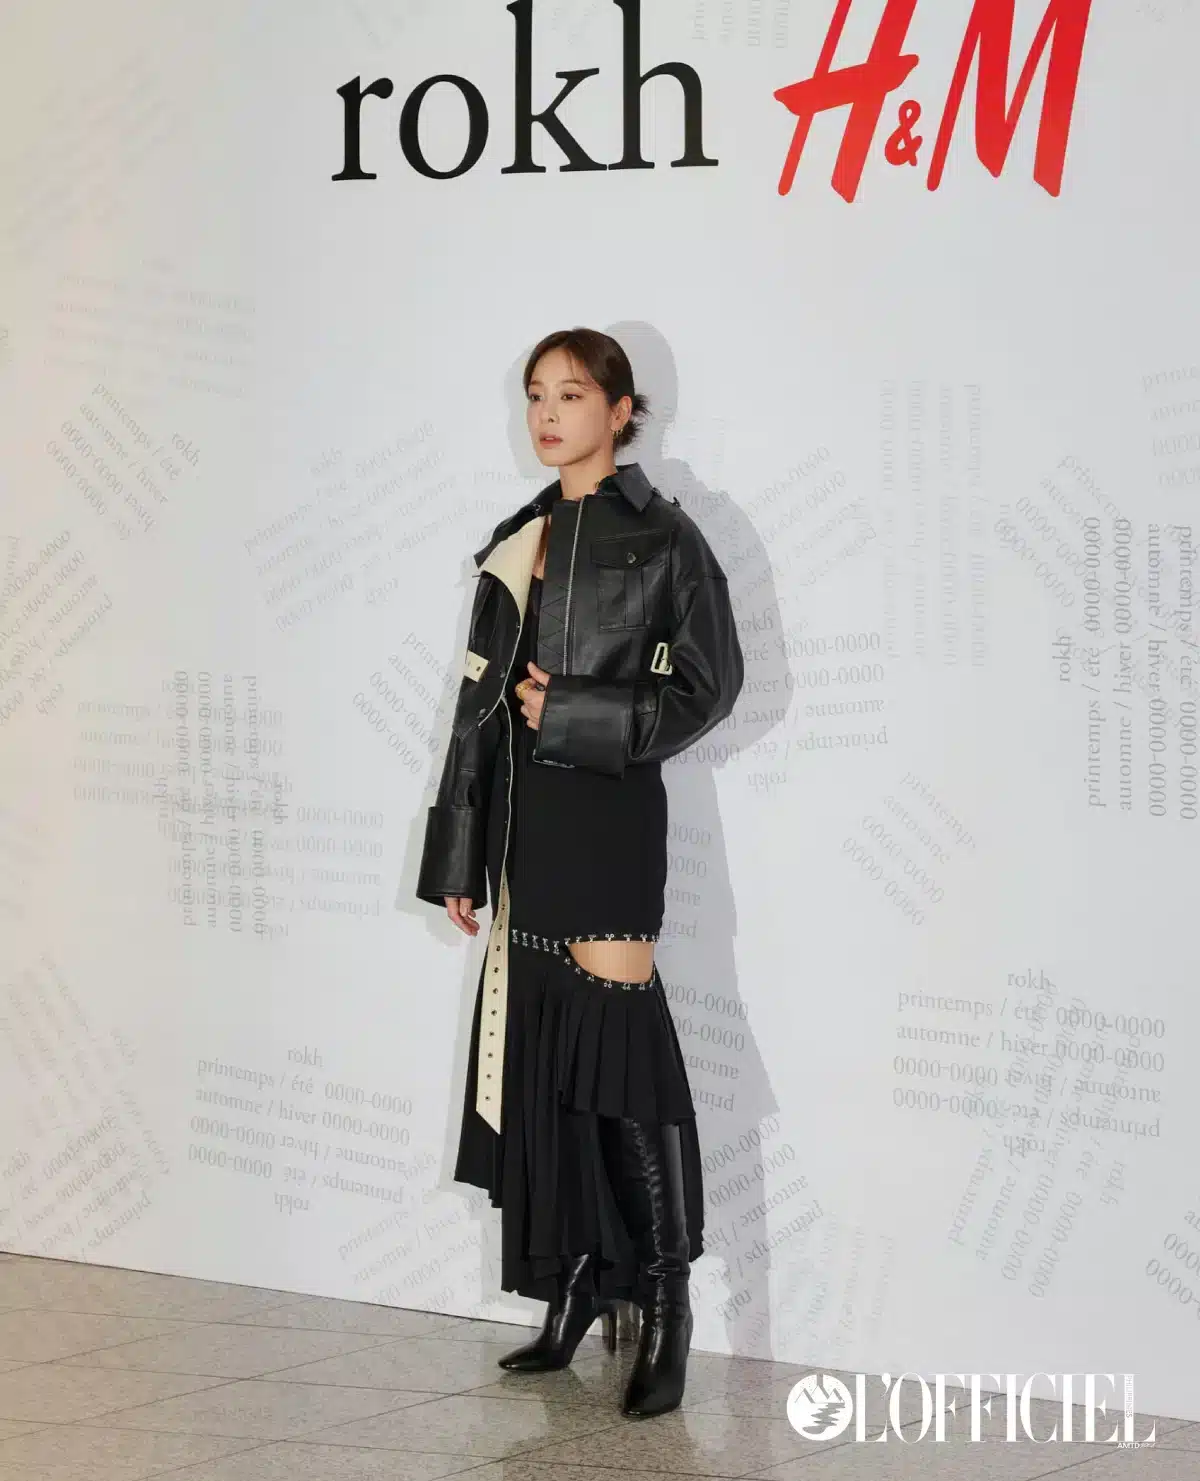 Азиатские знаменитости на мероприятии "Rokh x H&M"